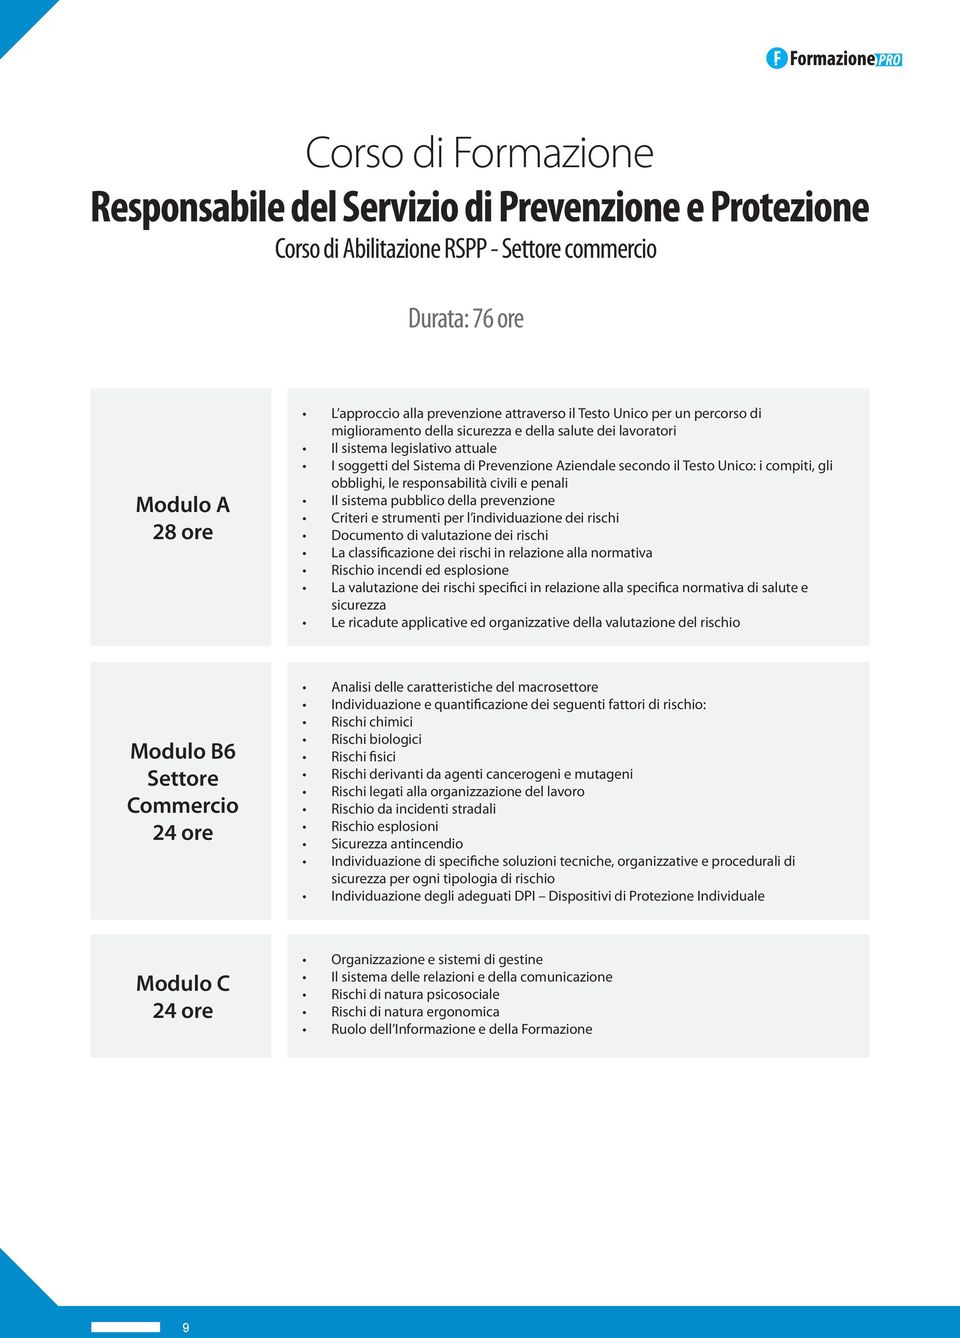 le responsabilità civili e penali Il sistema pubblico della prevenzione Criteri e strumenti per l individuazione dei rischi Documento di valutazione dei rischi La classificazione dei rischi in